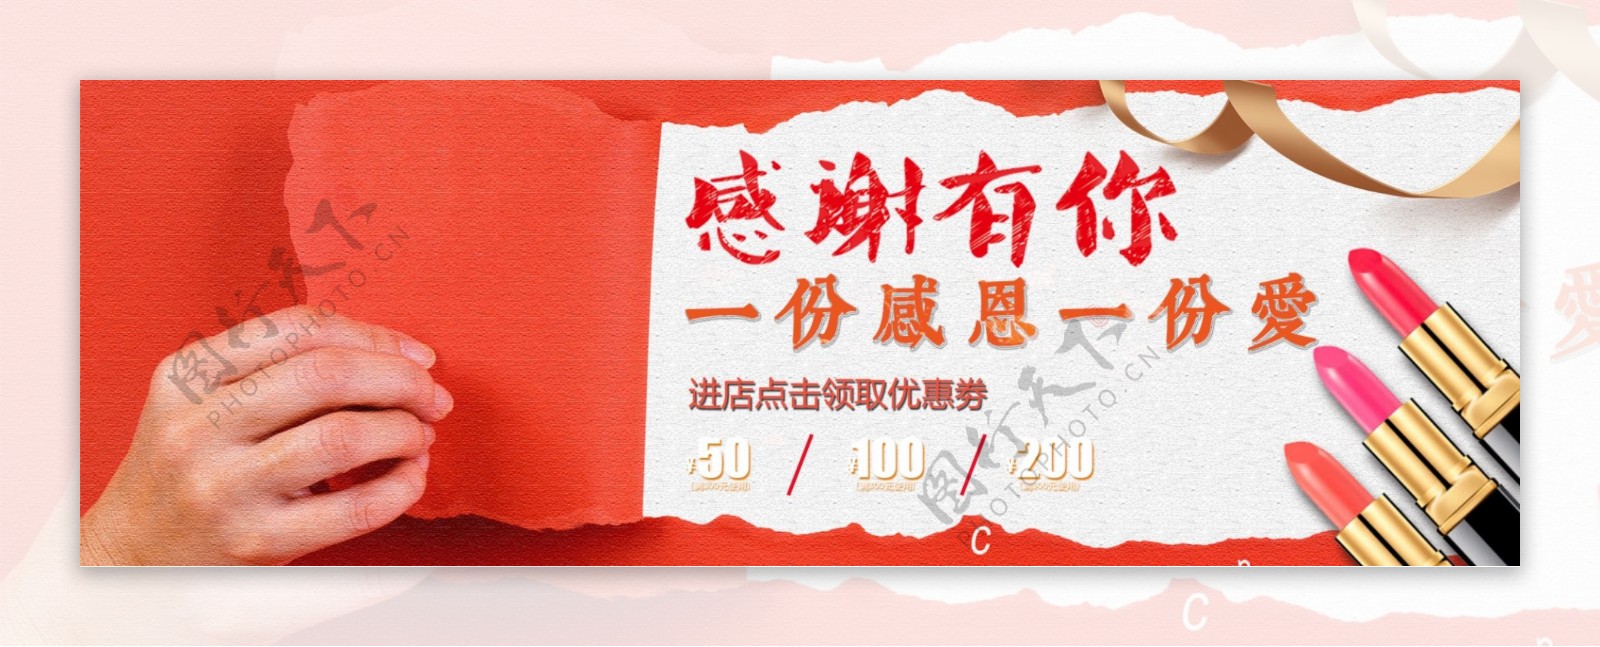 创意简约大气电商淘宝活动感恩节海报banner